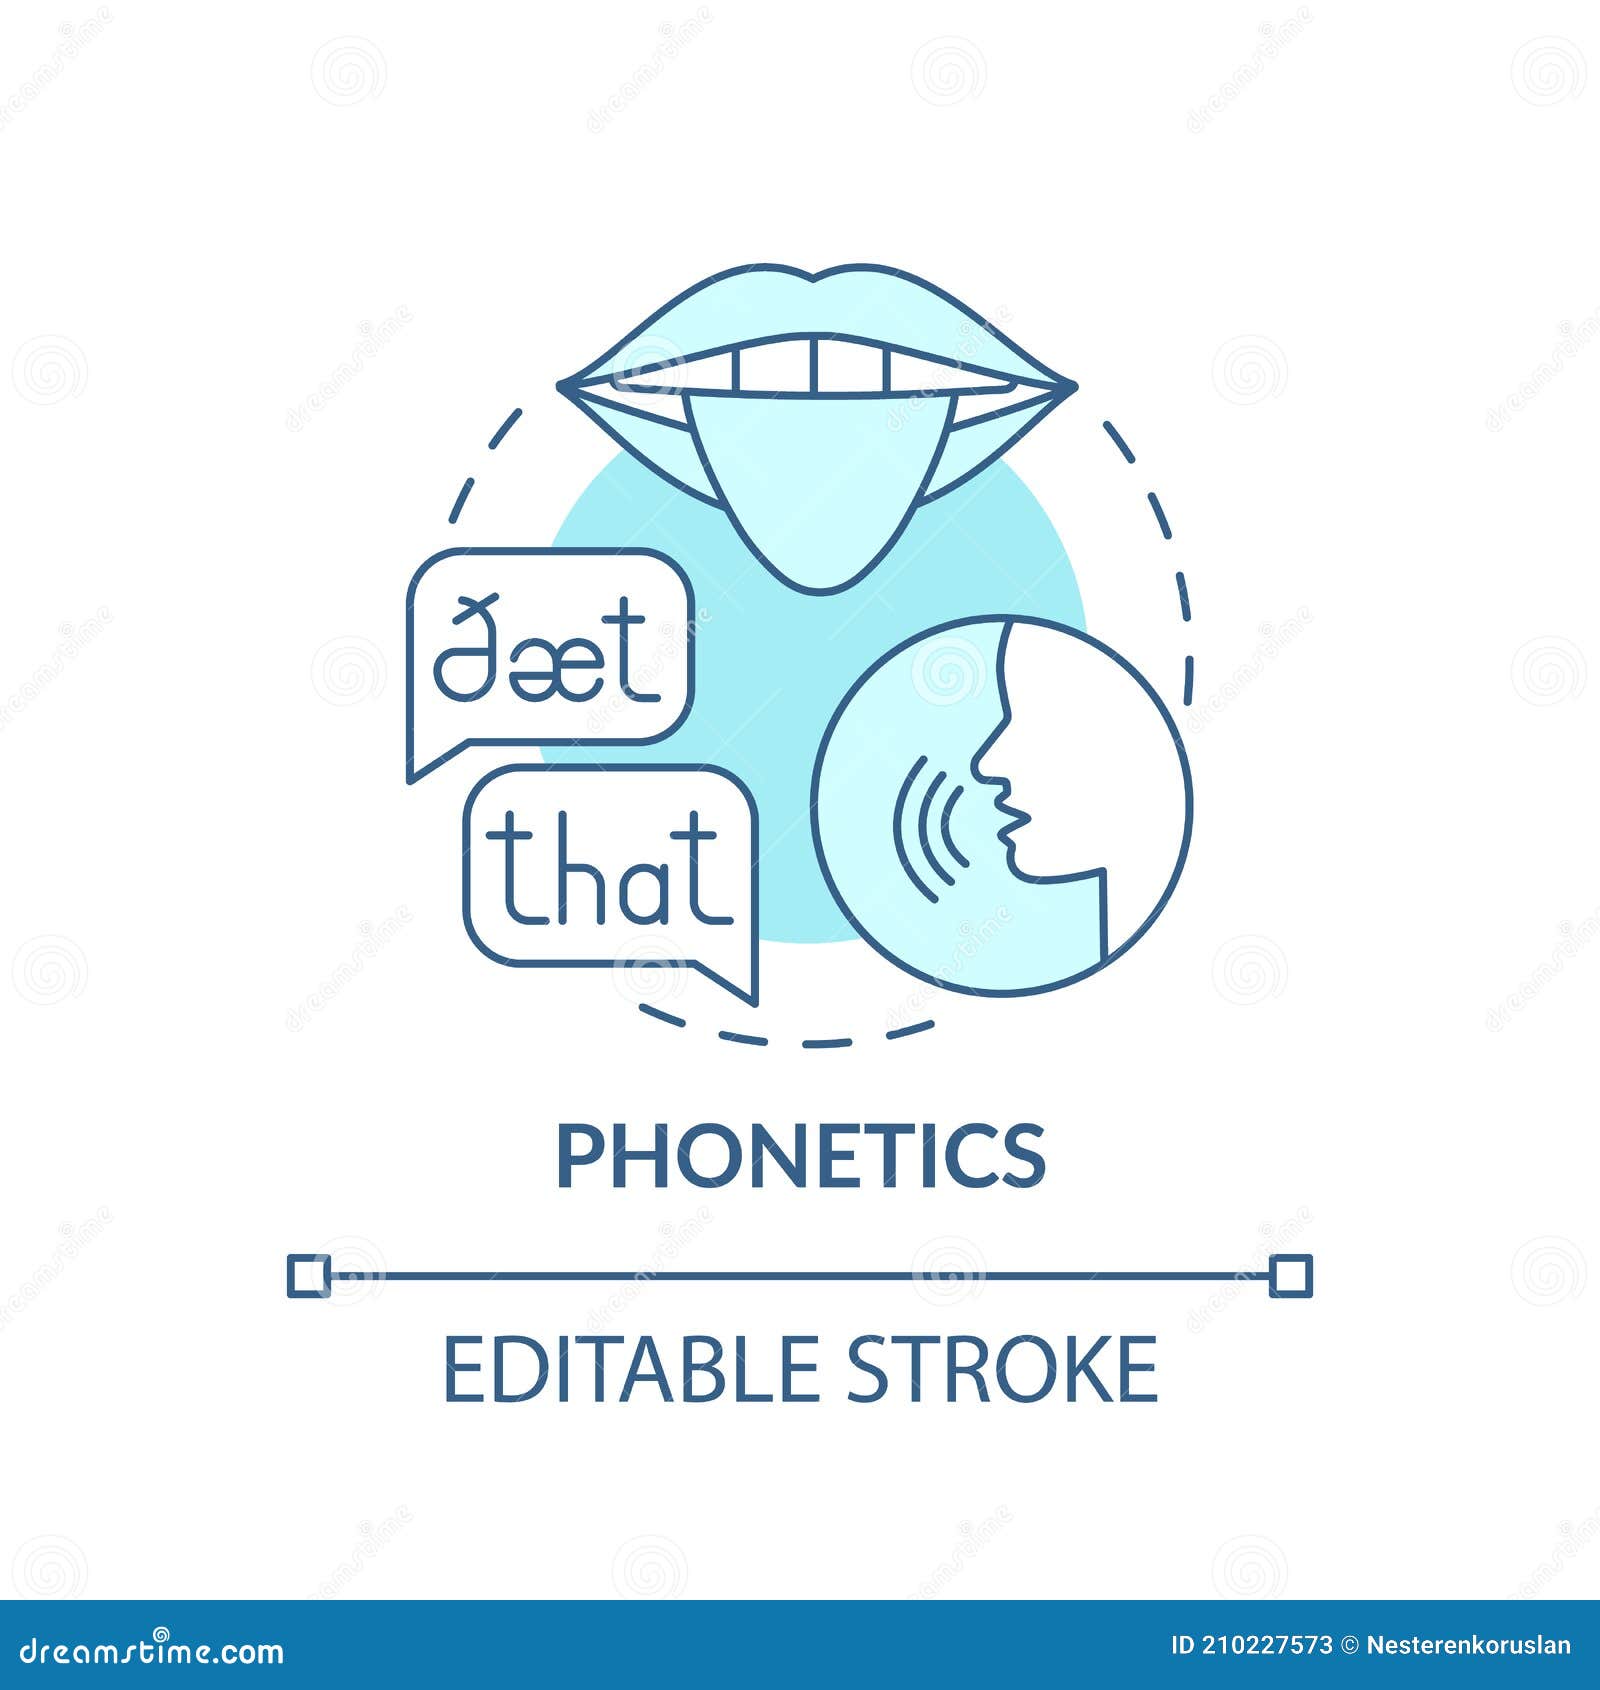 phonetics concept icon